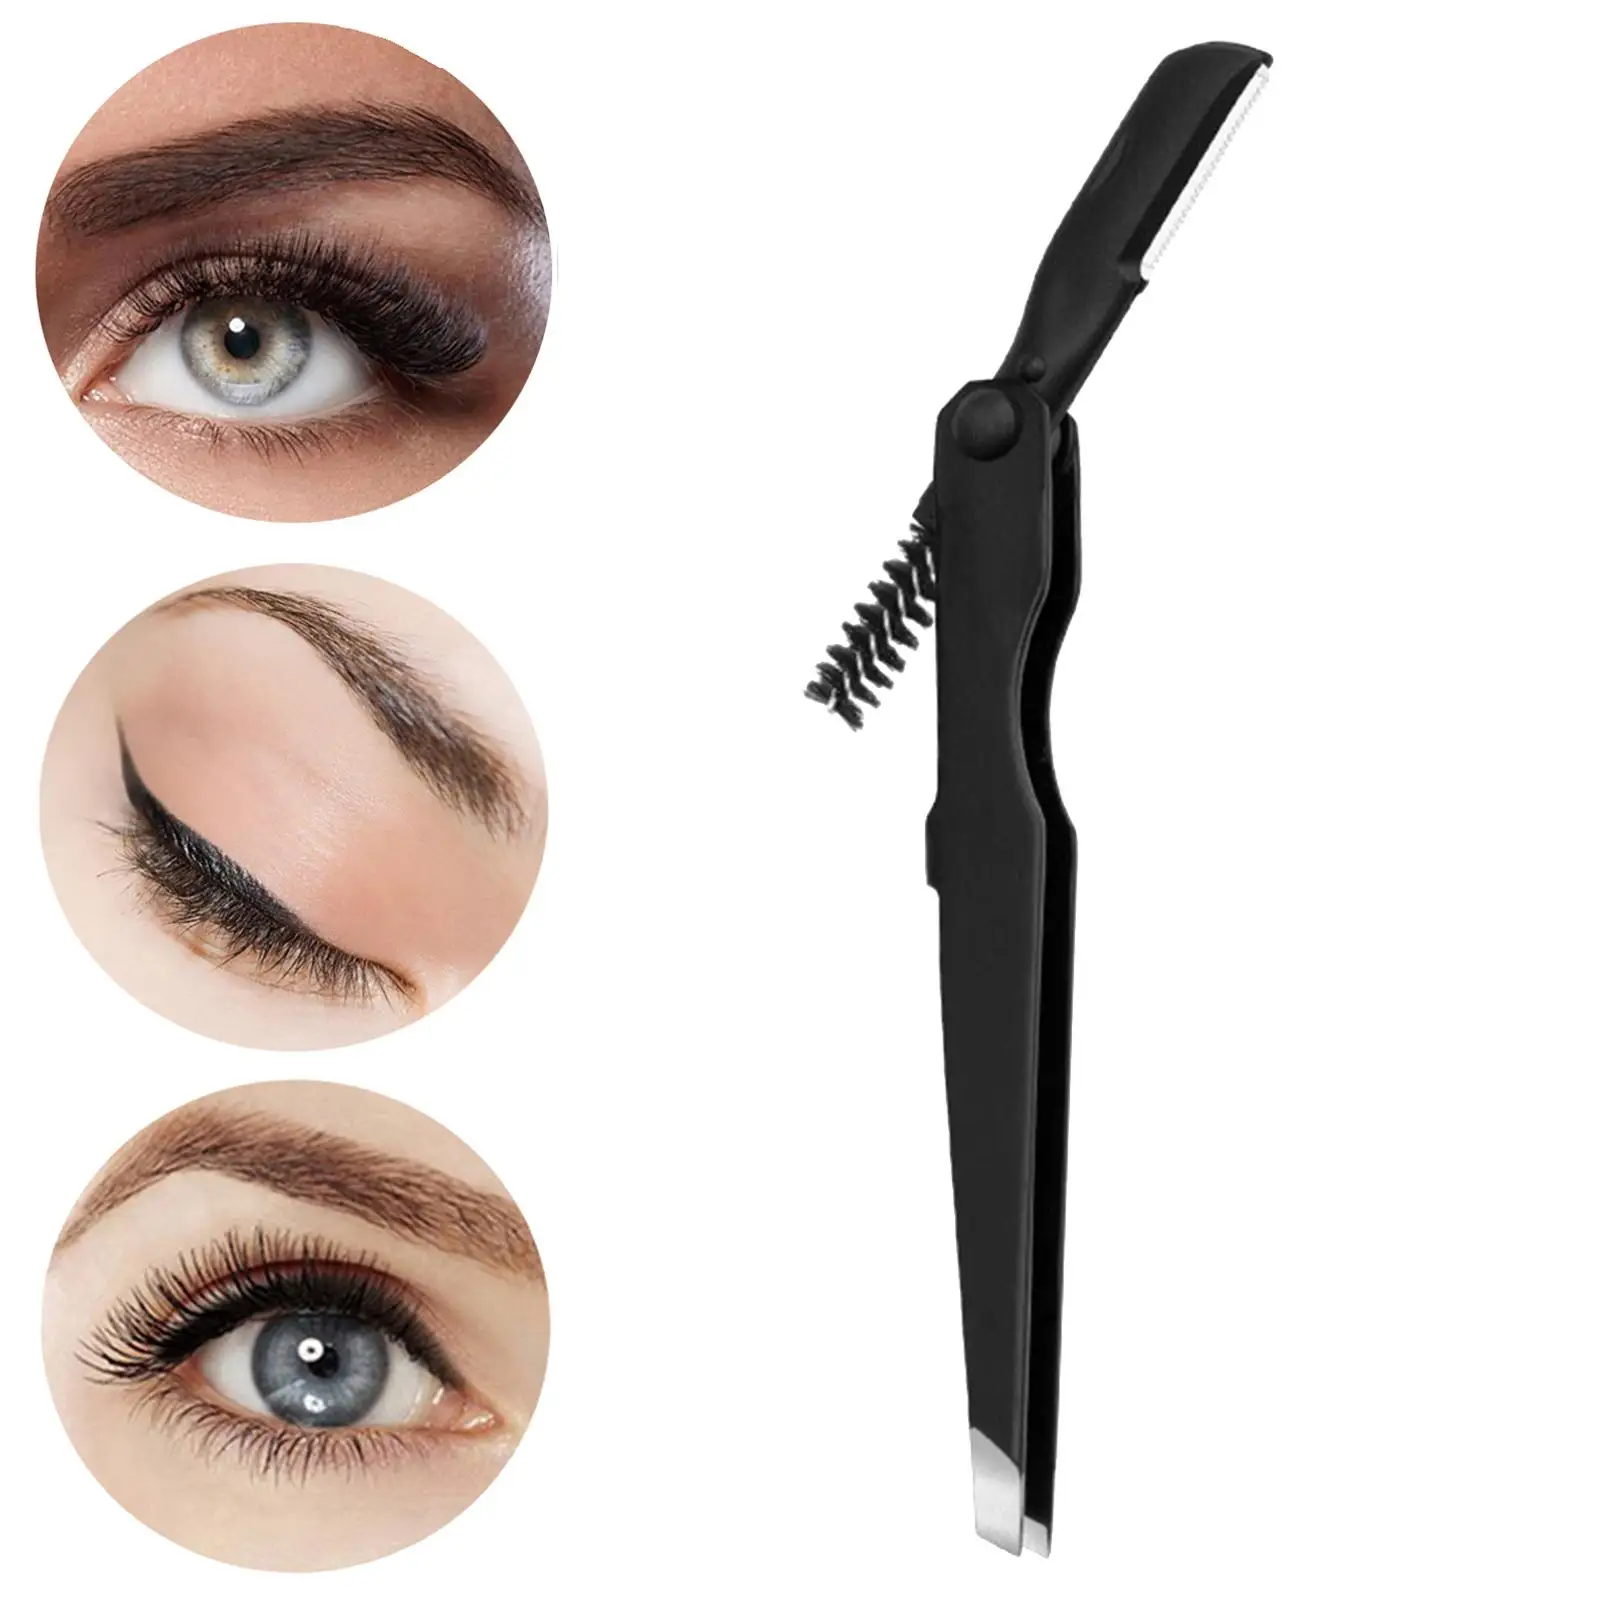 Eyebrow Tweezers Comfortable Grip Multipurpose Makeup Tools Eyebrow Trimmer